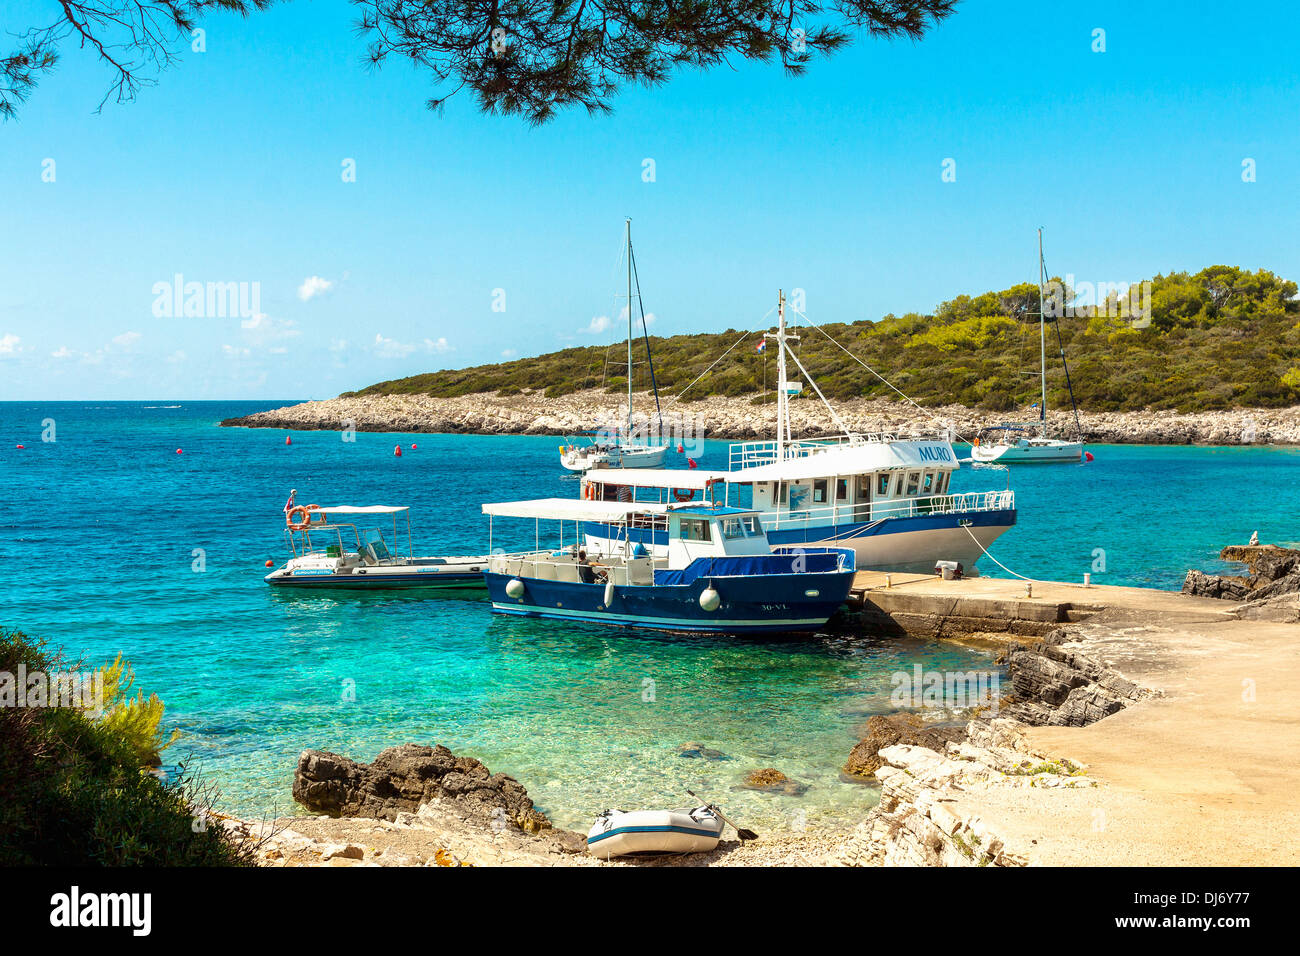 Taxi-Boote im kleinen Hafen auf der Insel Proizd, Kroatien Stockfoto